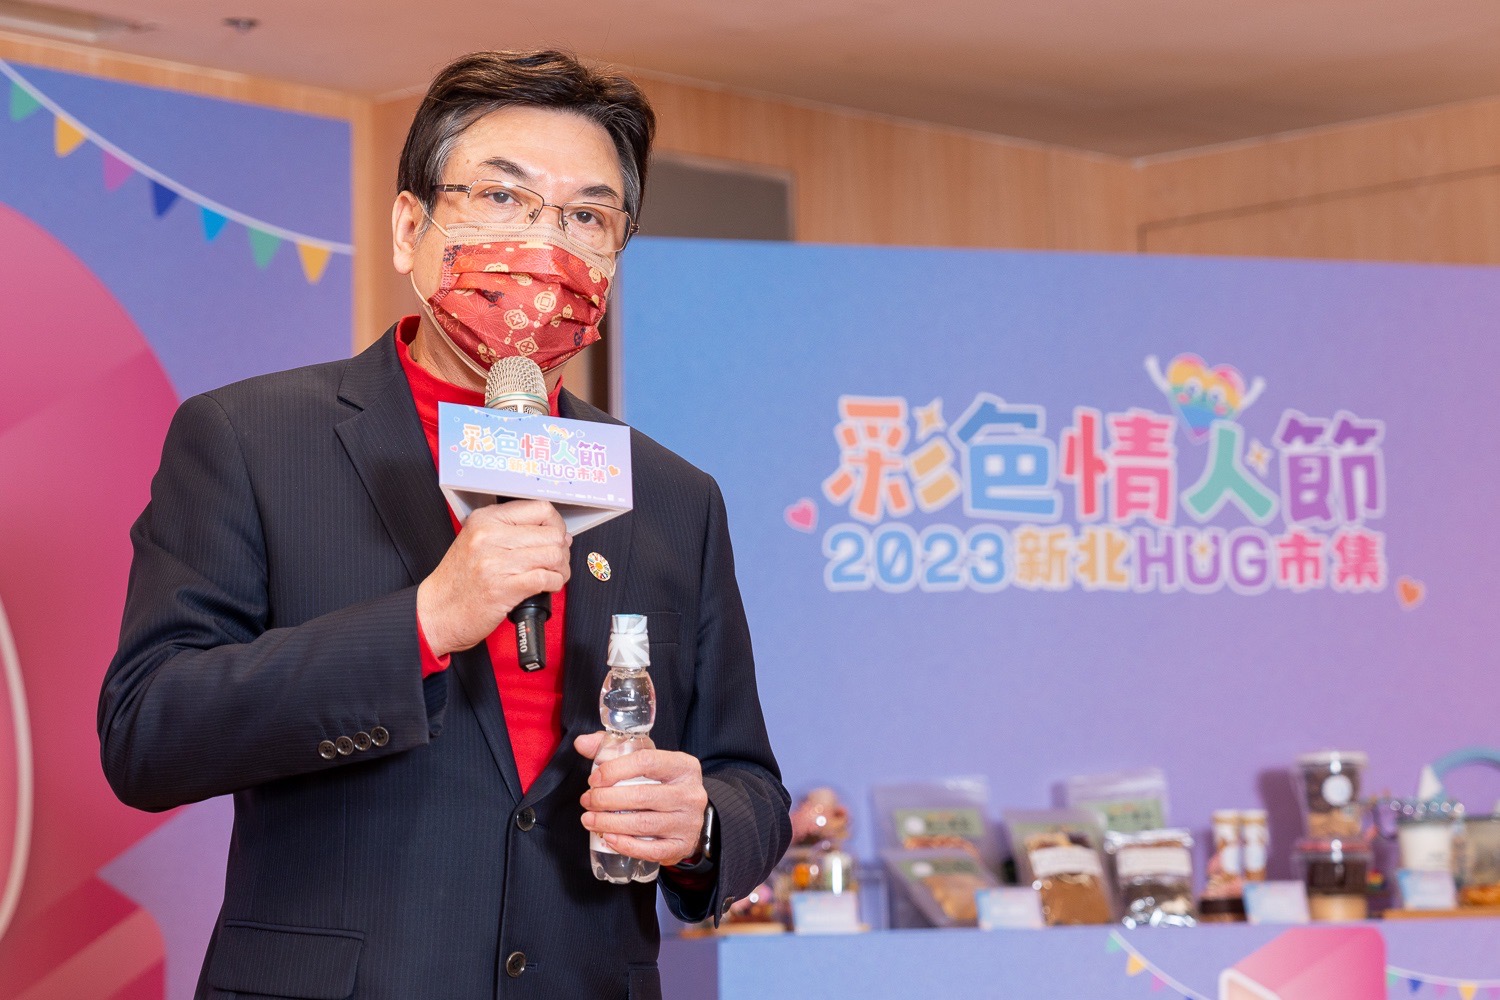 劉和然副市長表示，希望透過打造府中第2個節慶「府中情人節」，吸引民眾前來體驗全新的環境氛圍